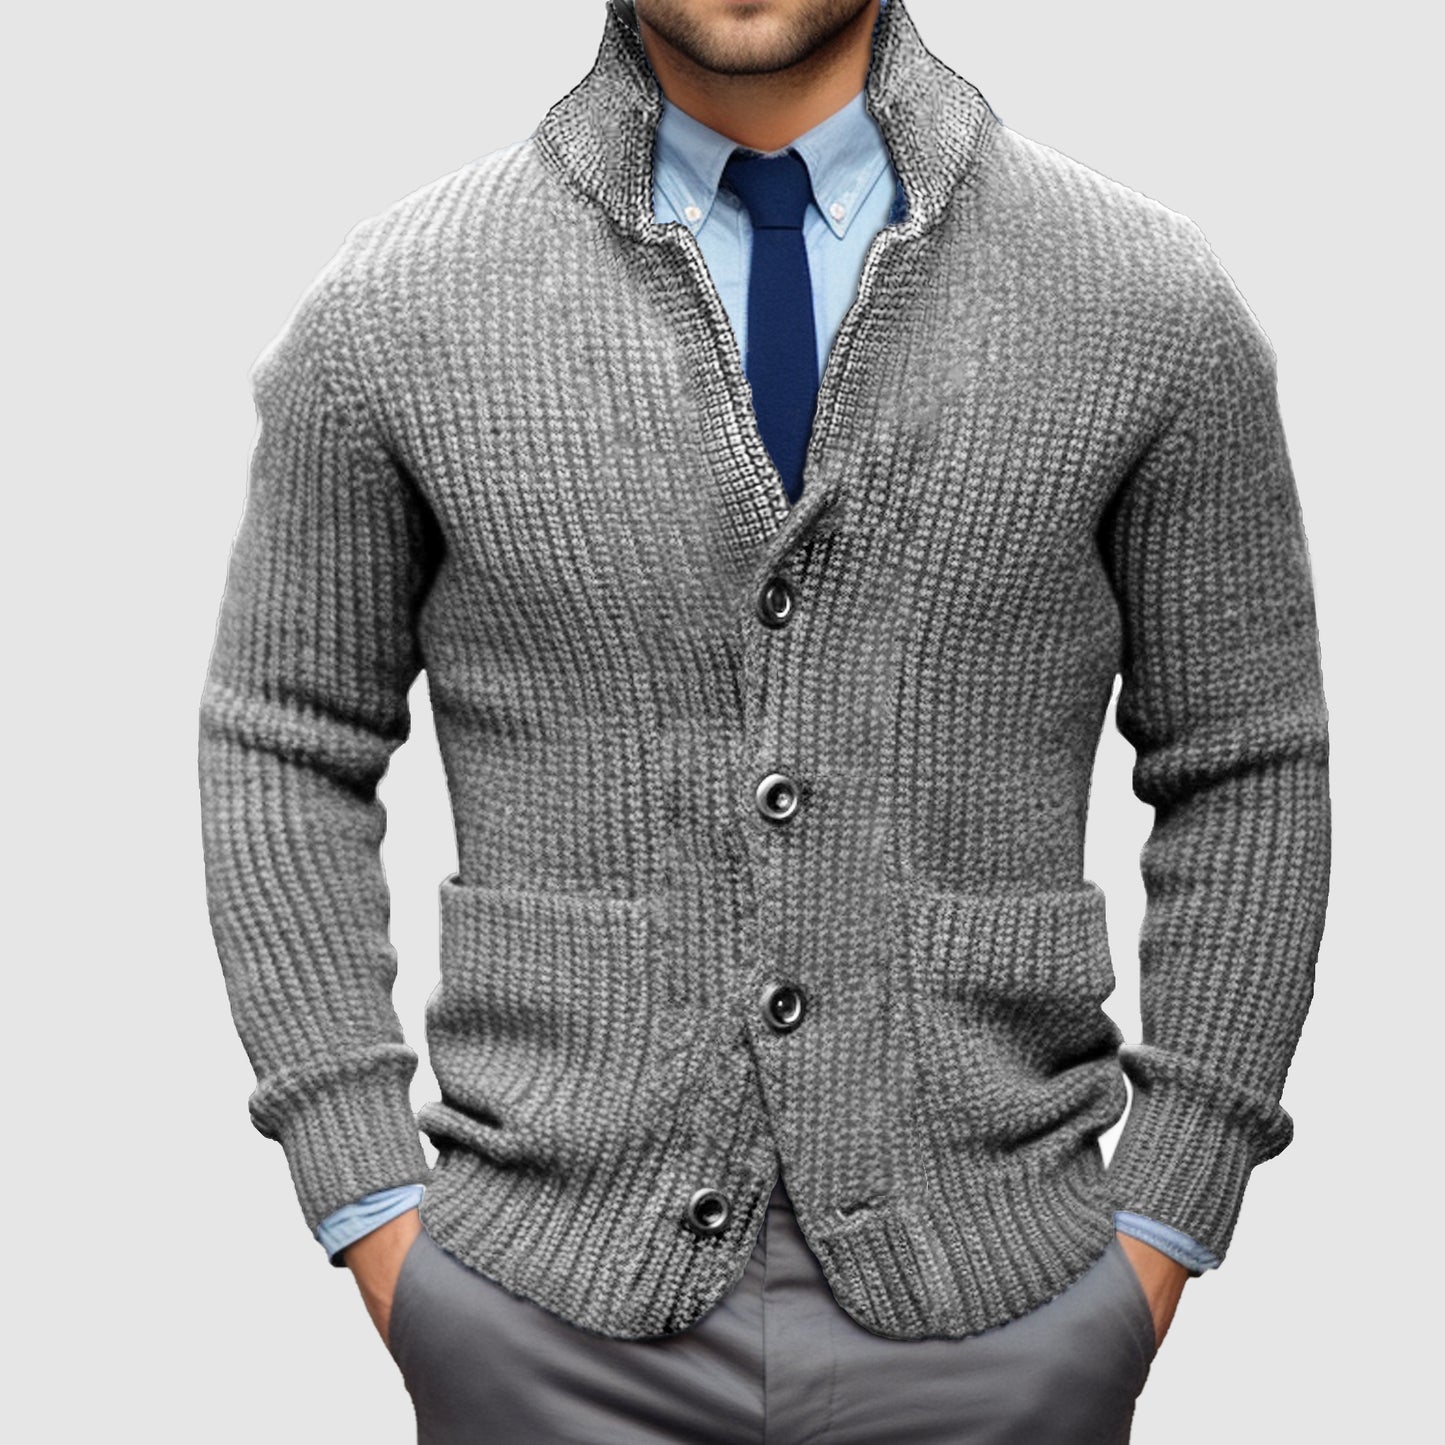 Men's Standing Collar Cardigan Warm Jacket